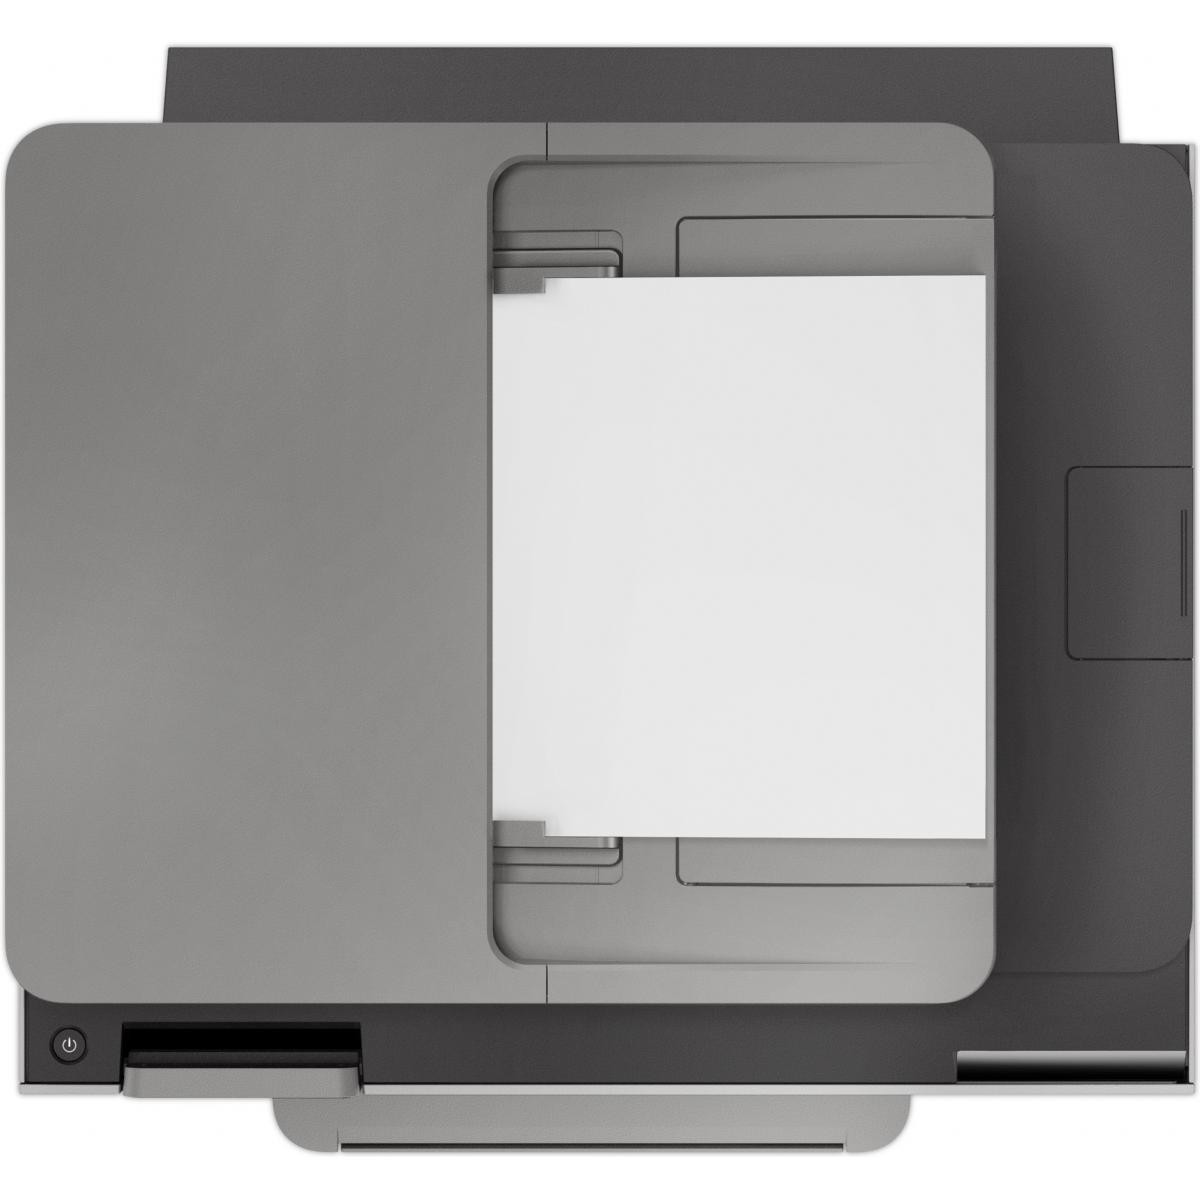 Hp - HP Officejet Pro 9025 - Imprimantes d'étiquettes